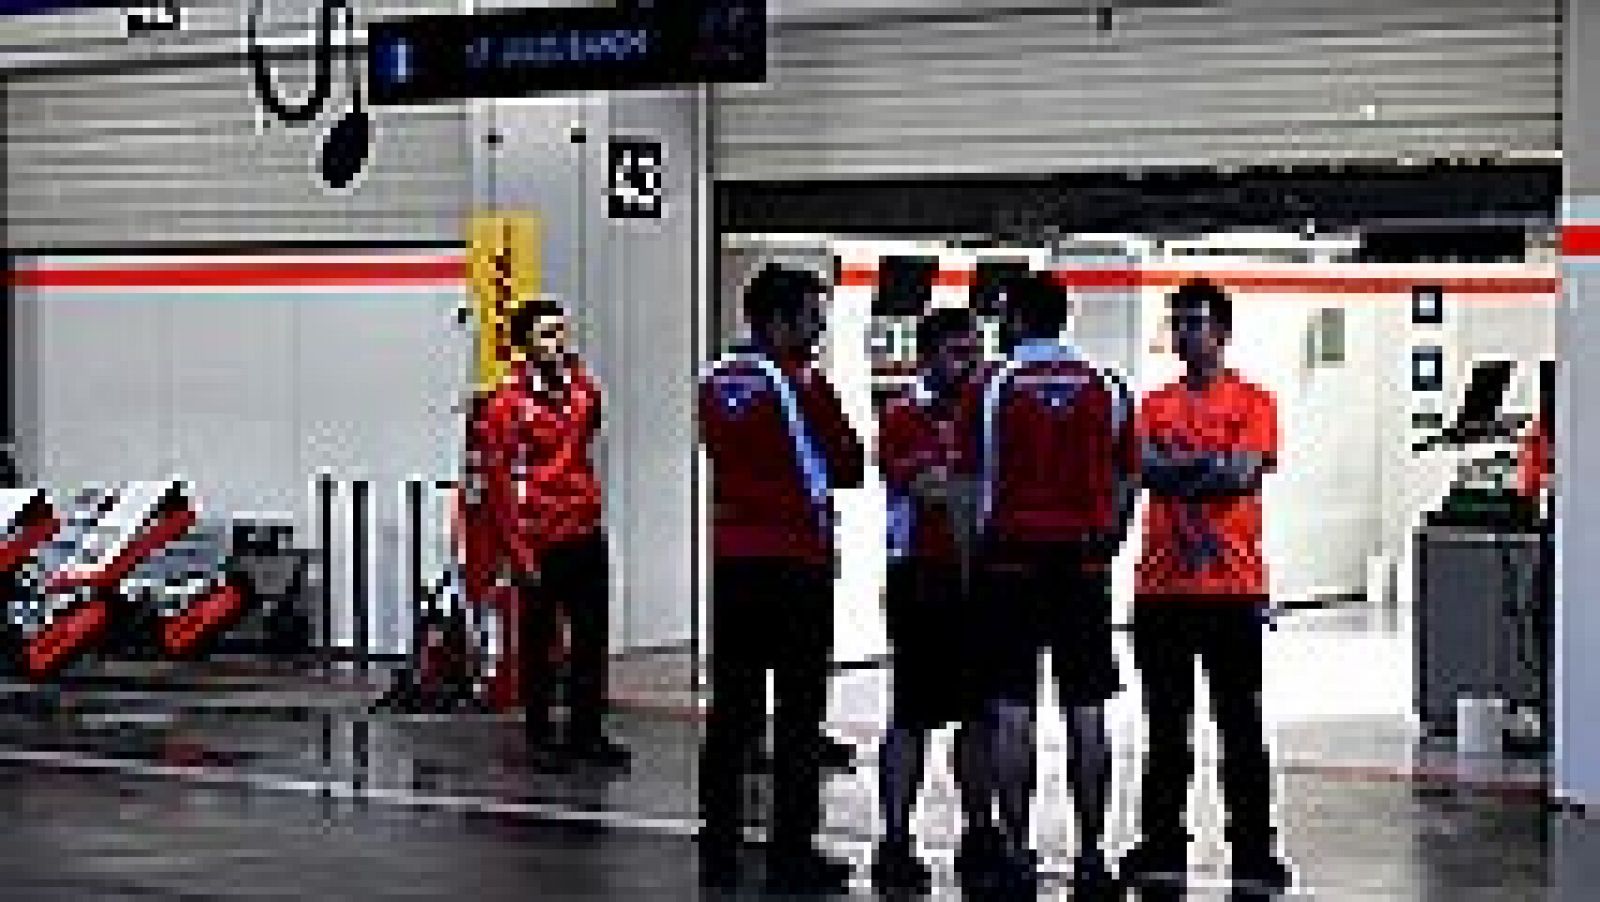 El estado del piloto francés Jules Bianchi, que sufrió este domingo un grave accidente en el Gran Premio de Japón de Fórmula 1, es "crítico pero estable", según ha informado a los medios el portavoz de la Federación Internacional de Automovilismo (FI